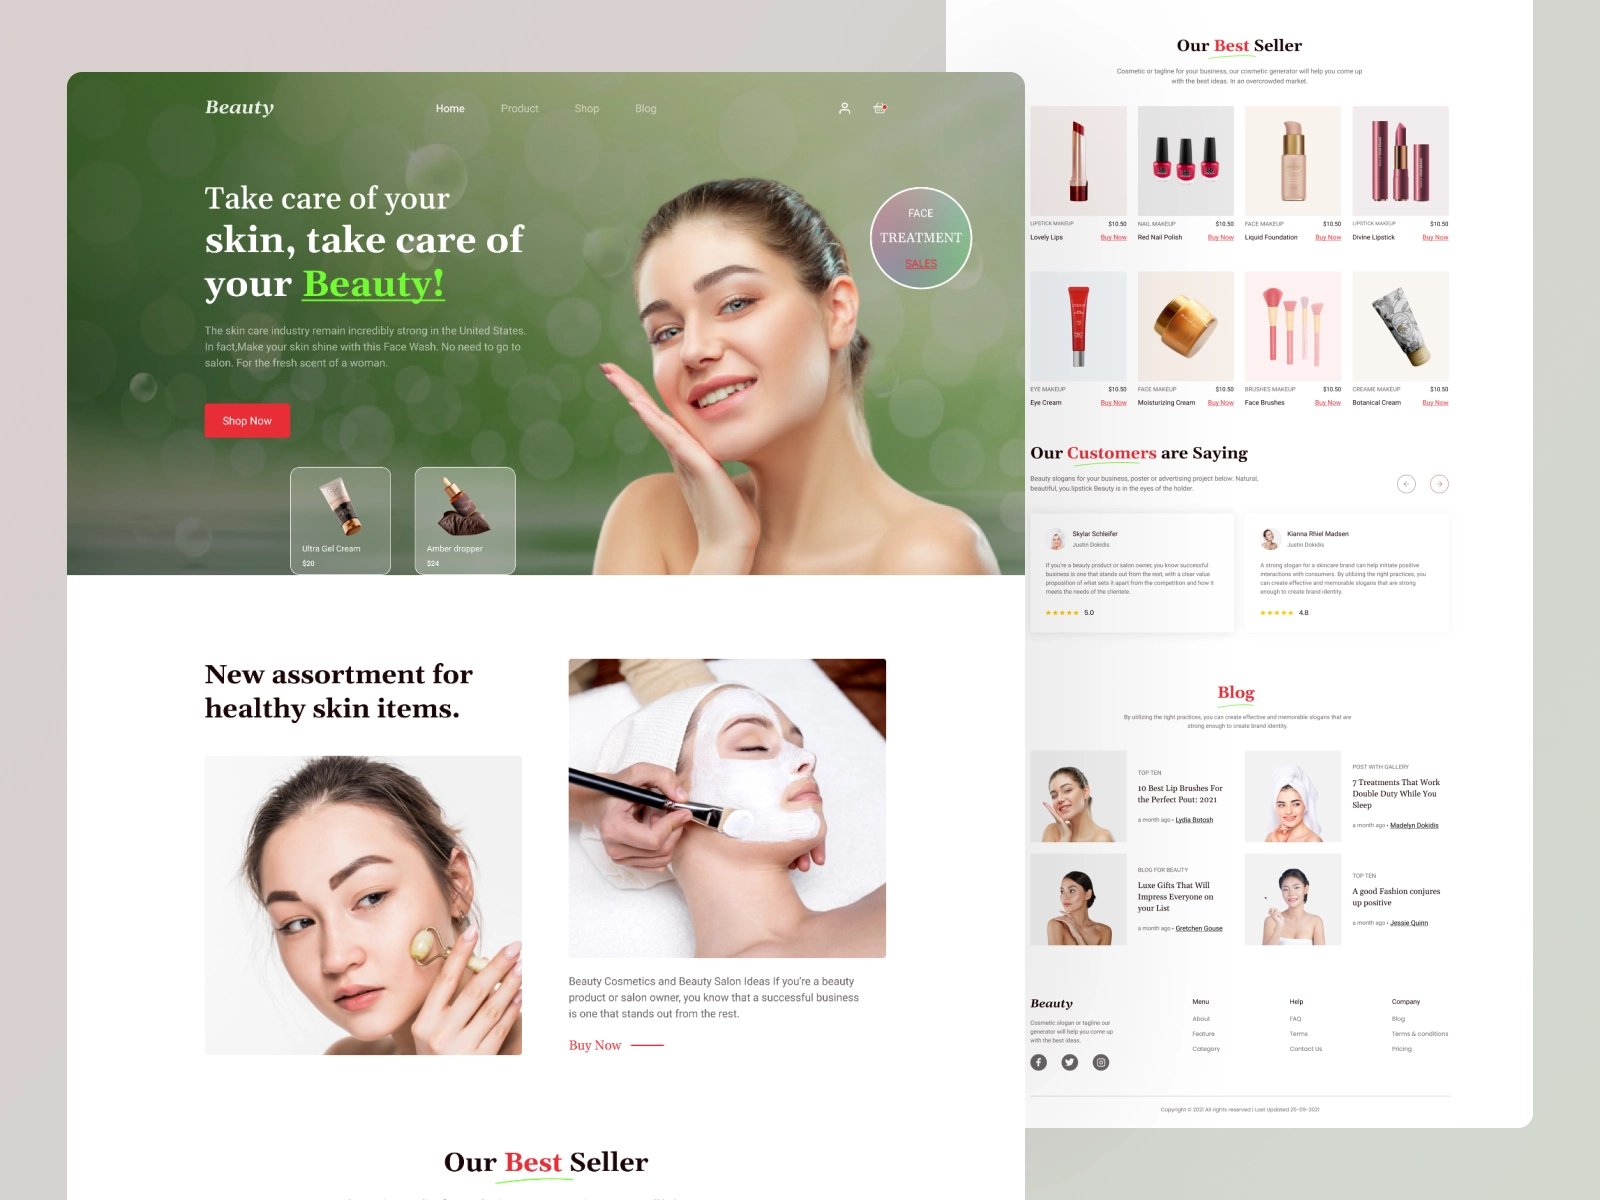 保持美丽！12组化妆产品WEB界面设计灵感